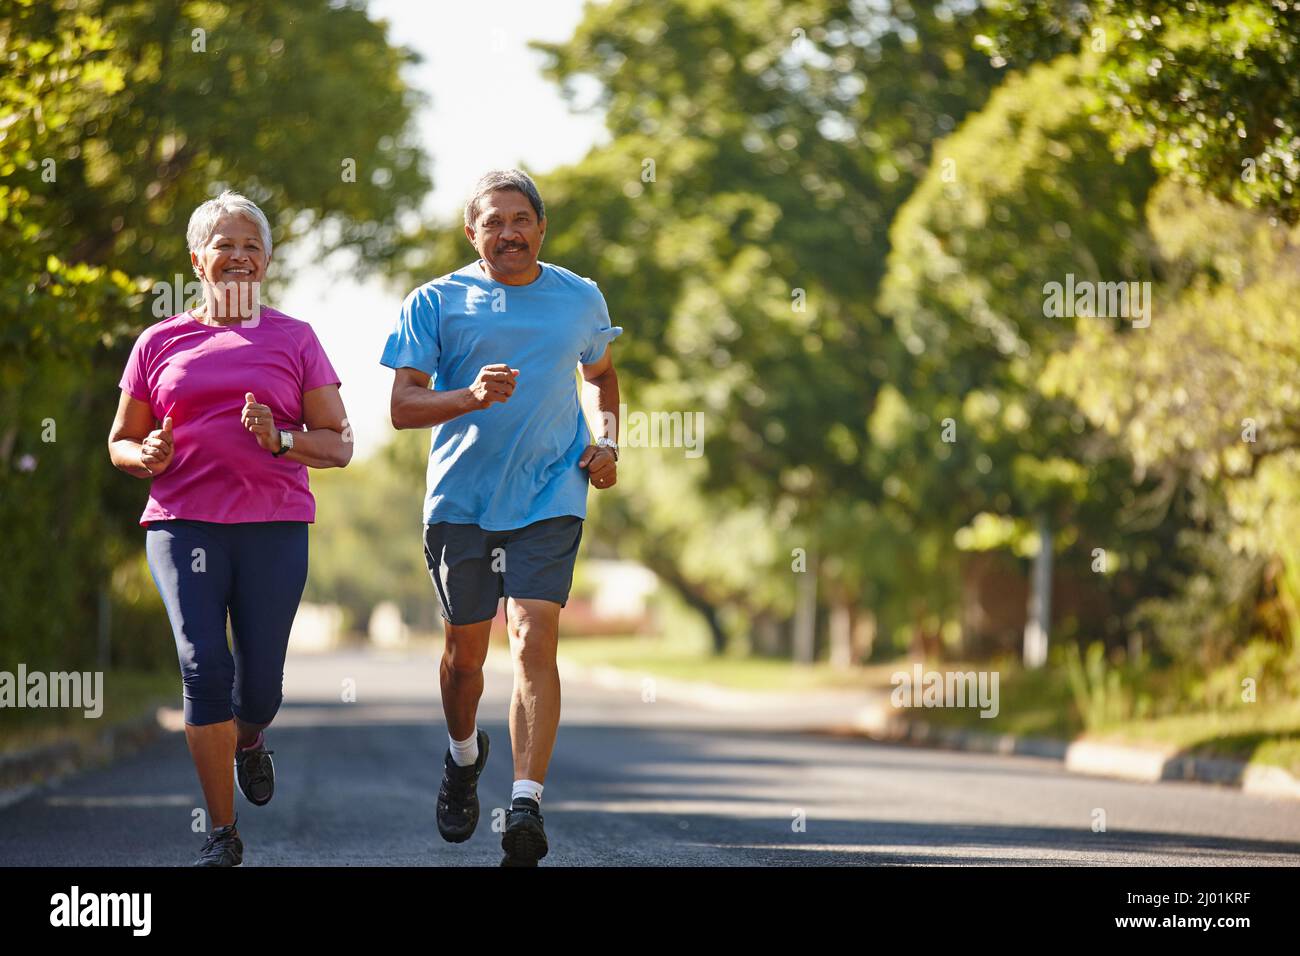 Glück und Gesundheit sind unser Ziel. Aufnahme eines reifen Paares, das an einem sonnigen Tag zusammen joggt. Stockfoto